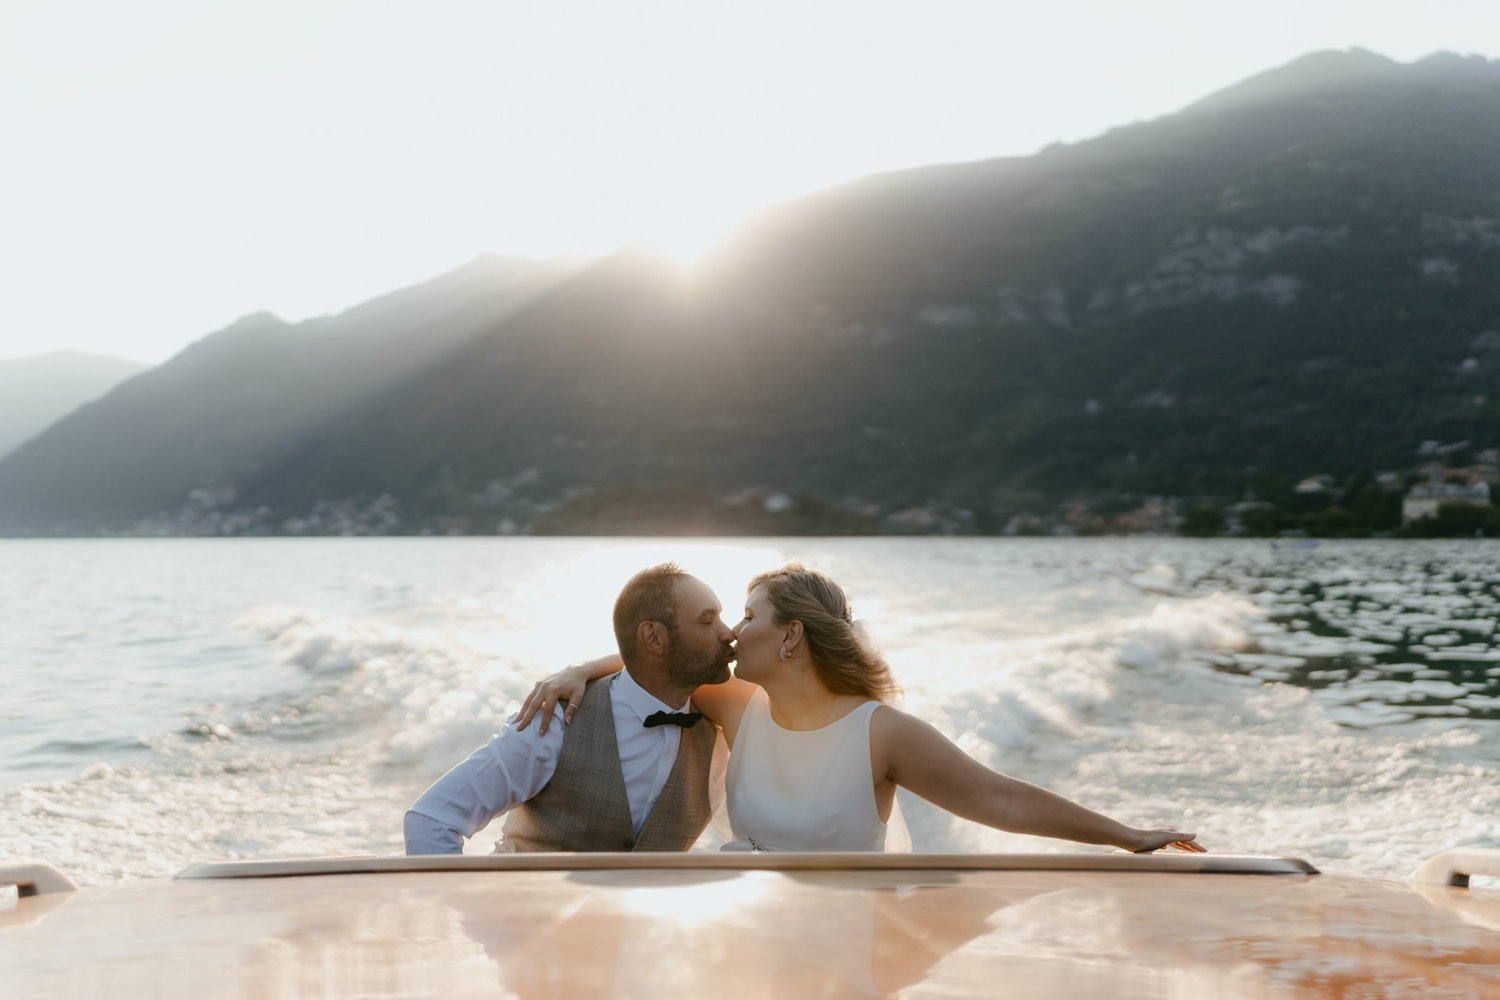 Mariage Lac de Côme, Italie — Anaïs Nannini